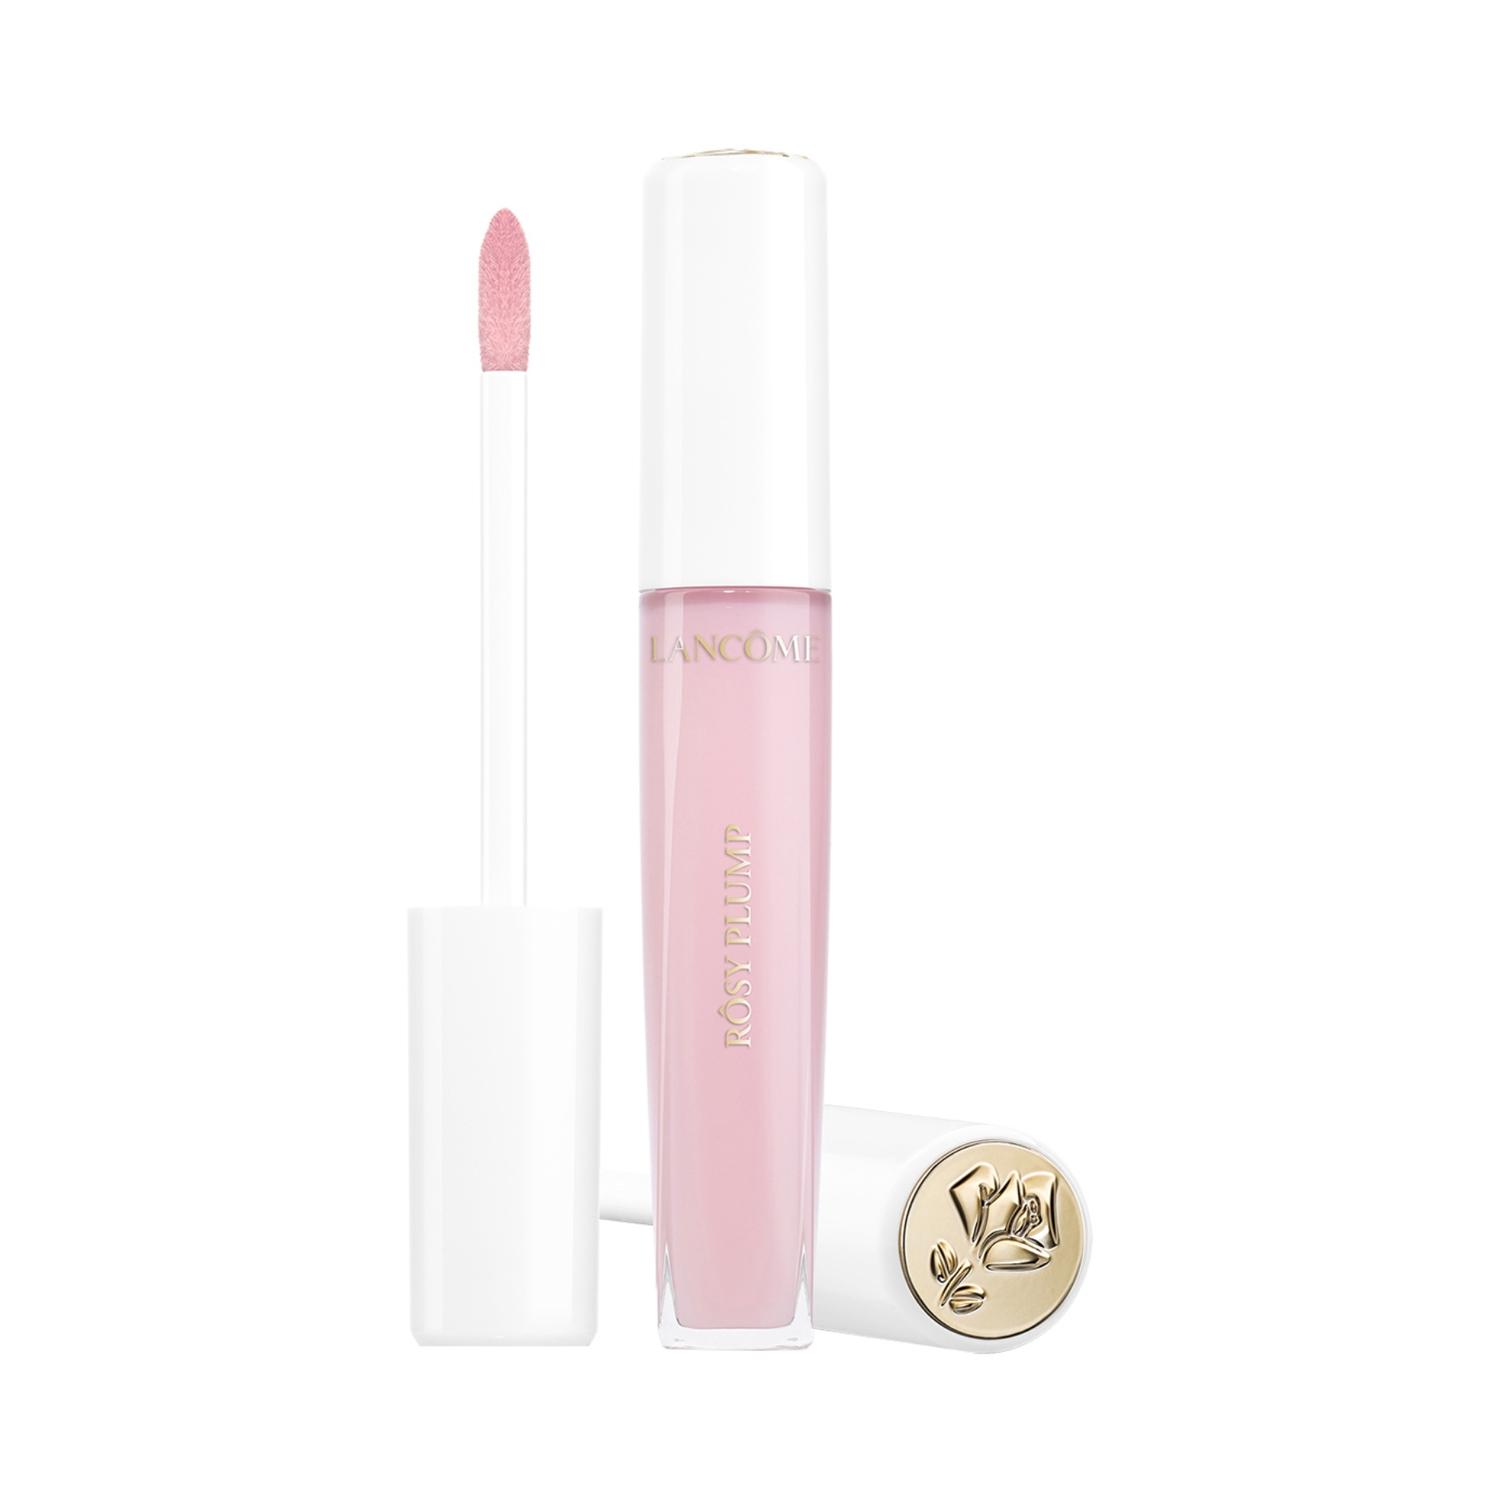 Lancome | Lancome L'Absolu Rosy Lip Plump - Pink (8ml)